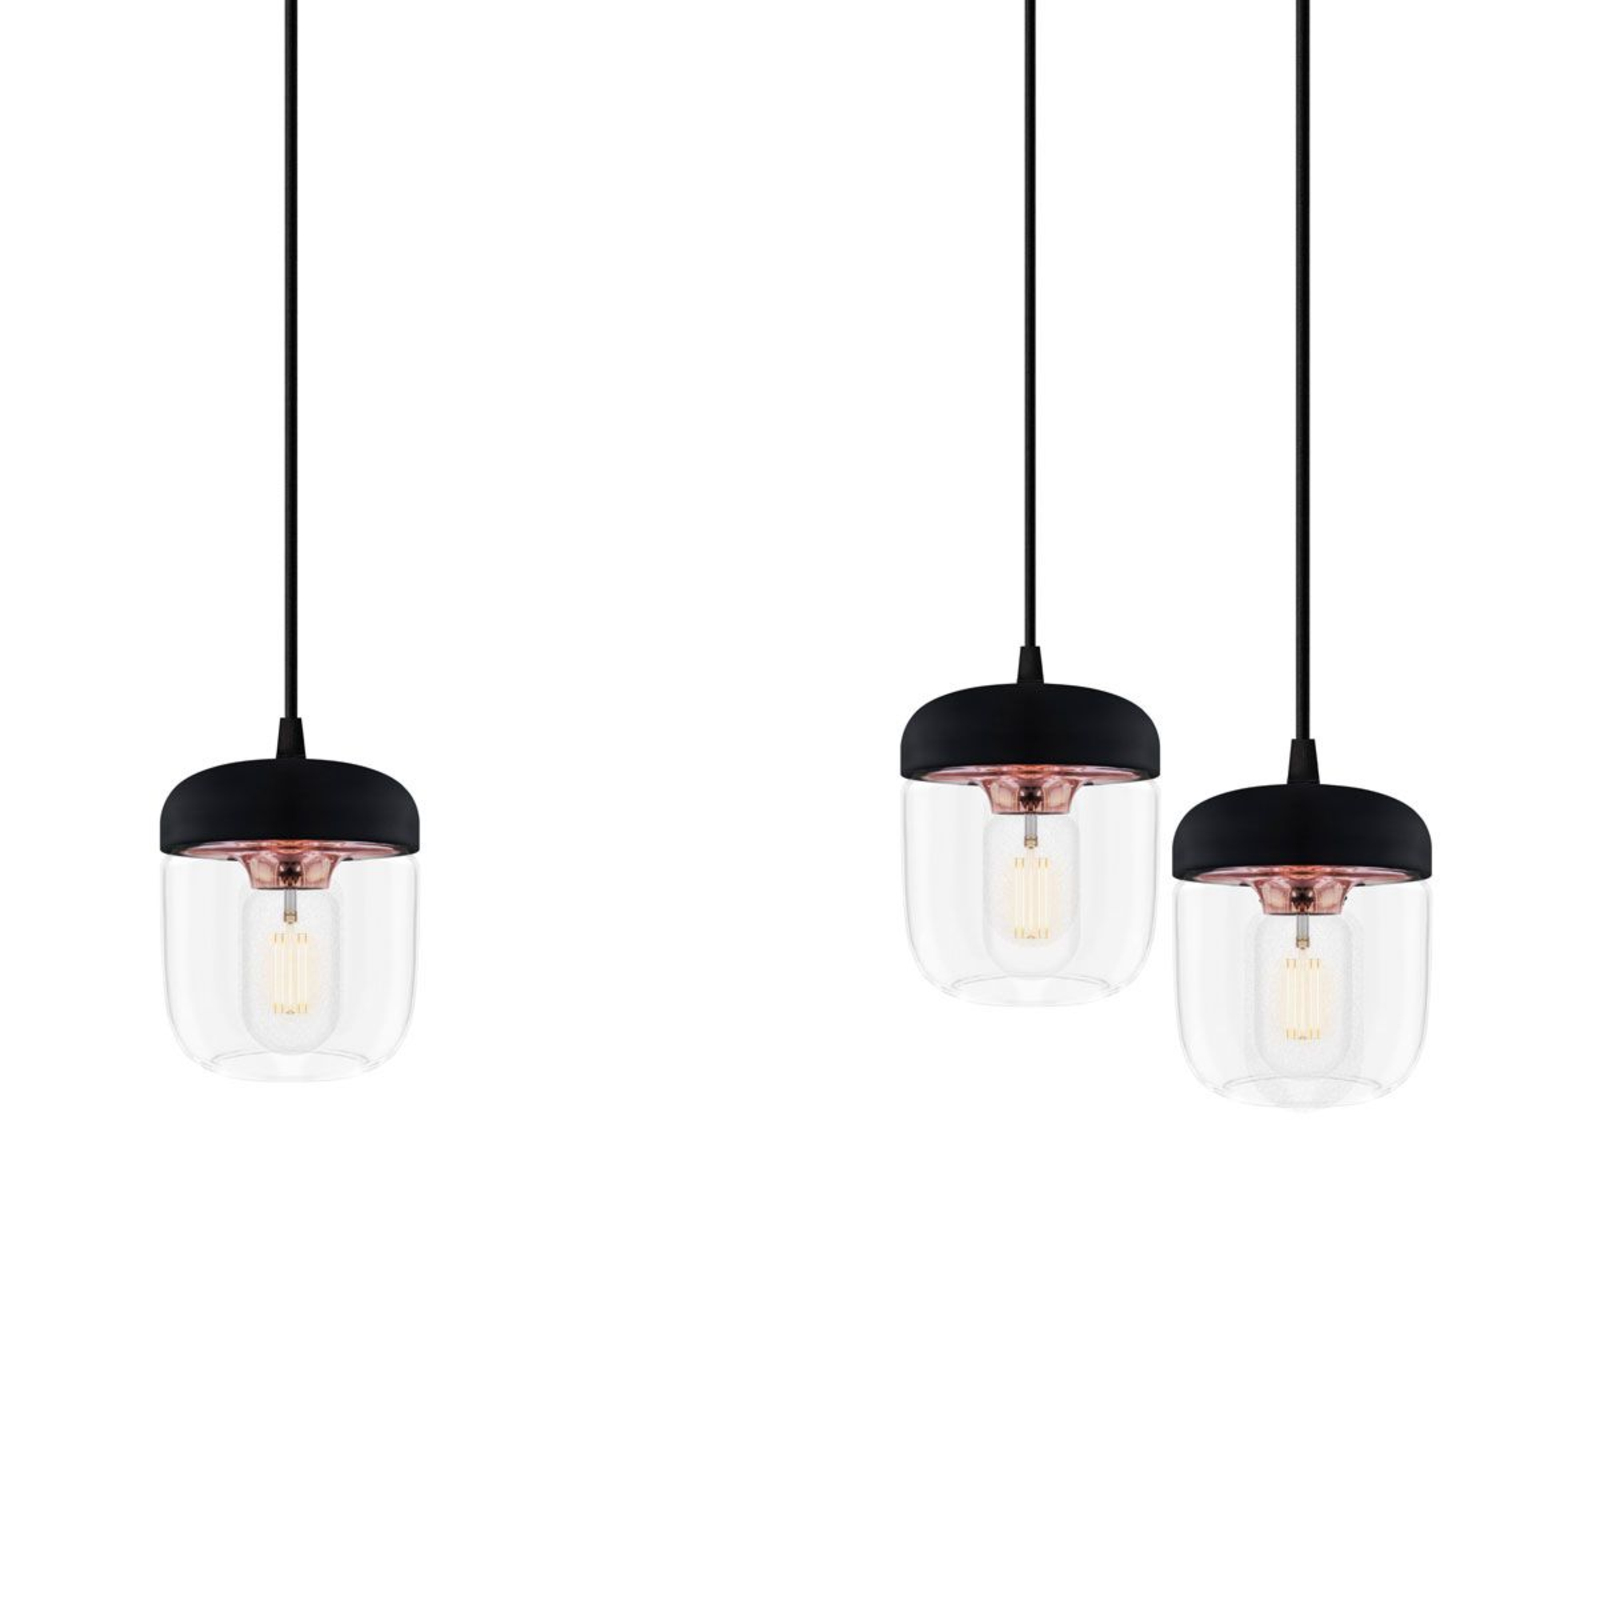 UMAGE Acorn hanglamp, zwart/koper, 3 lampen